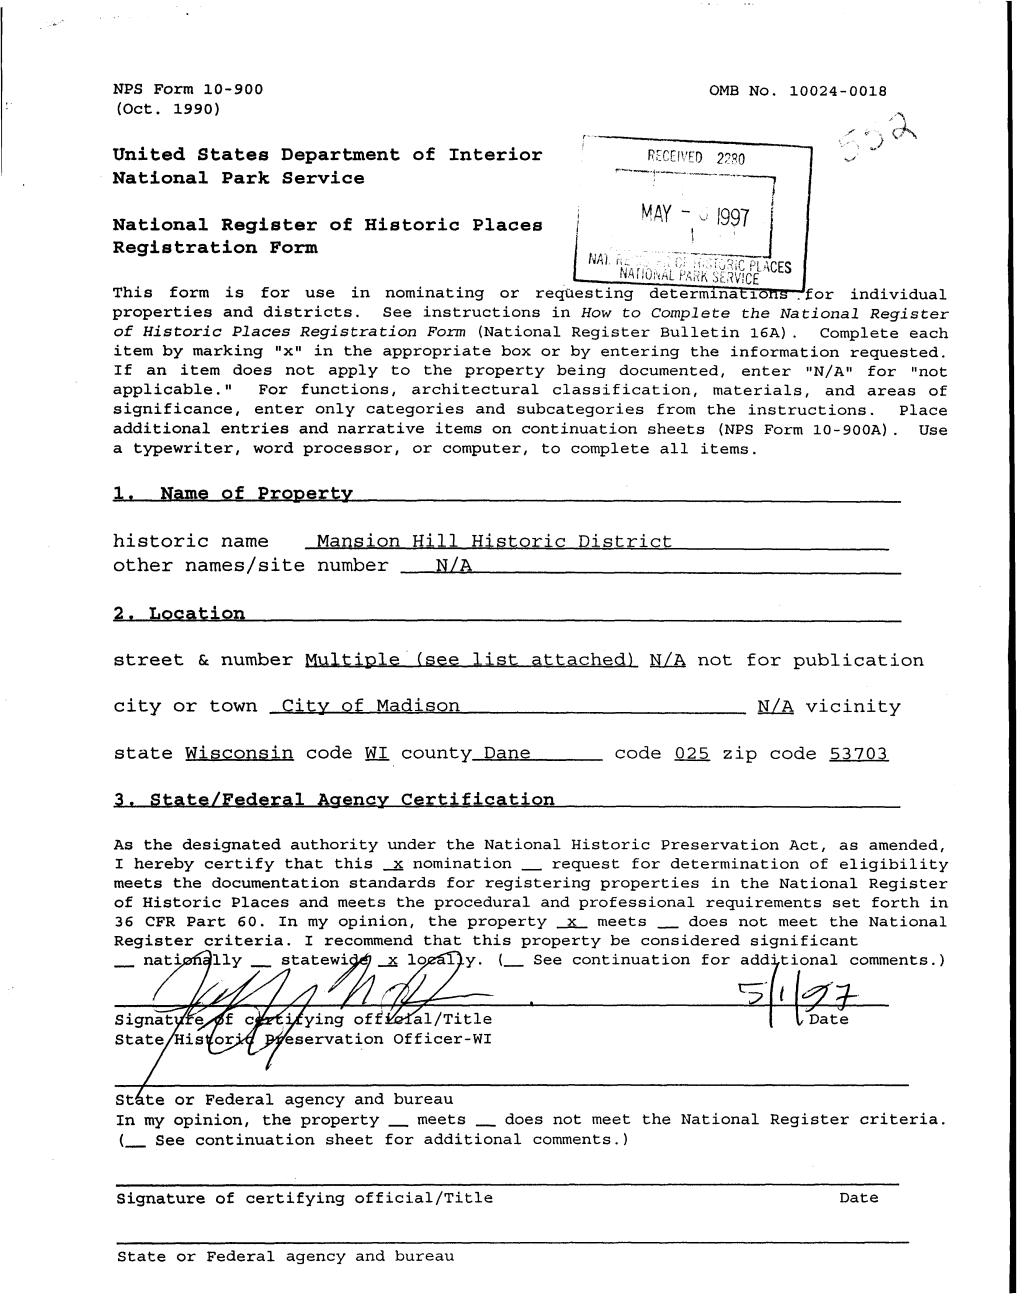 MAY ~ U 1997 | Registration Form